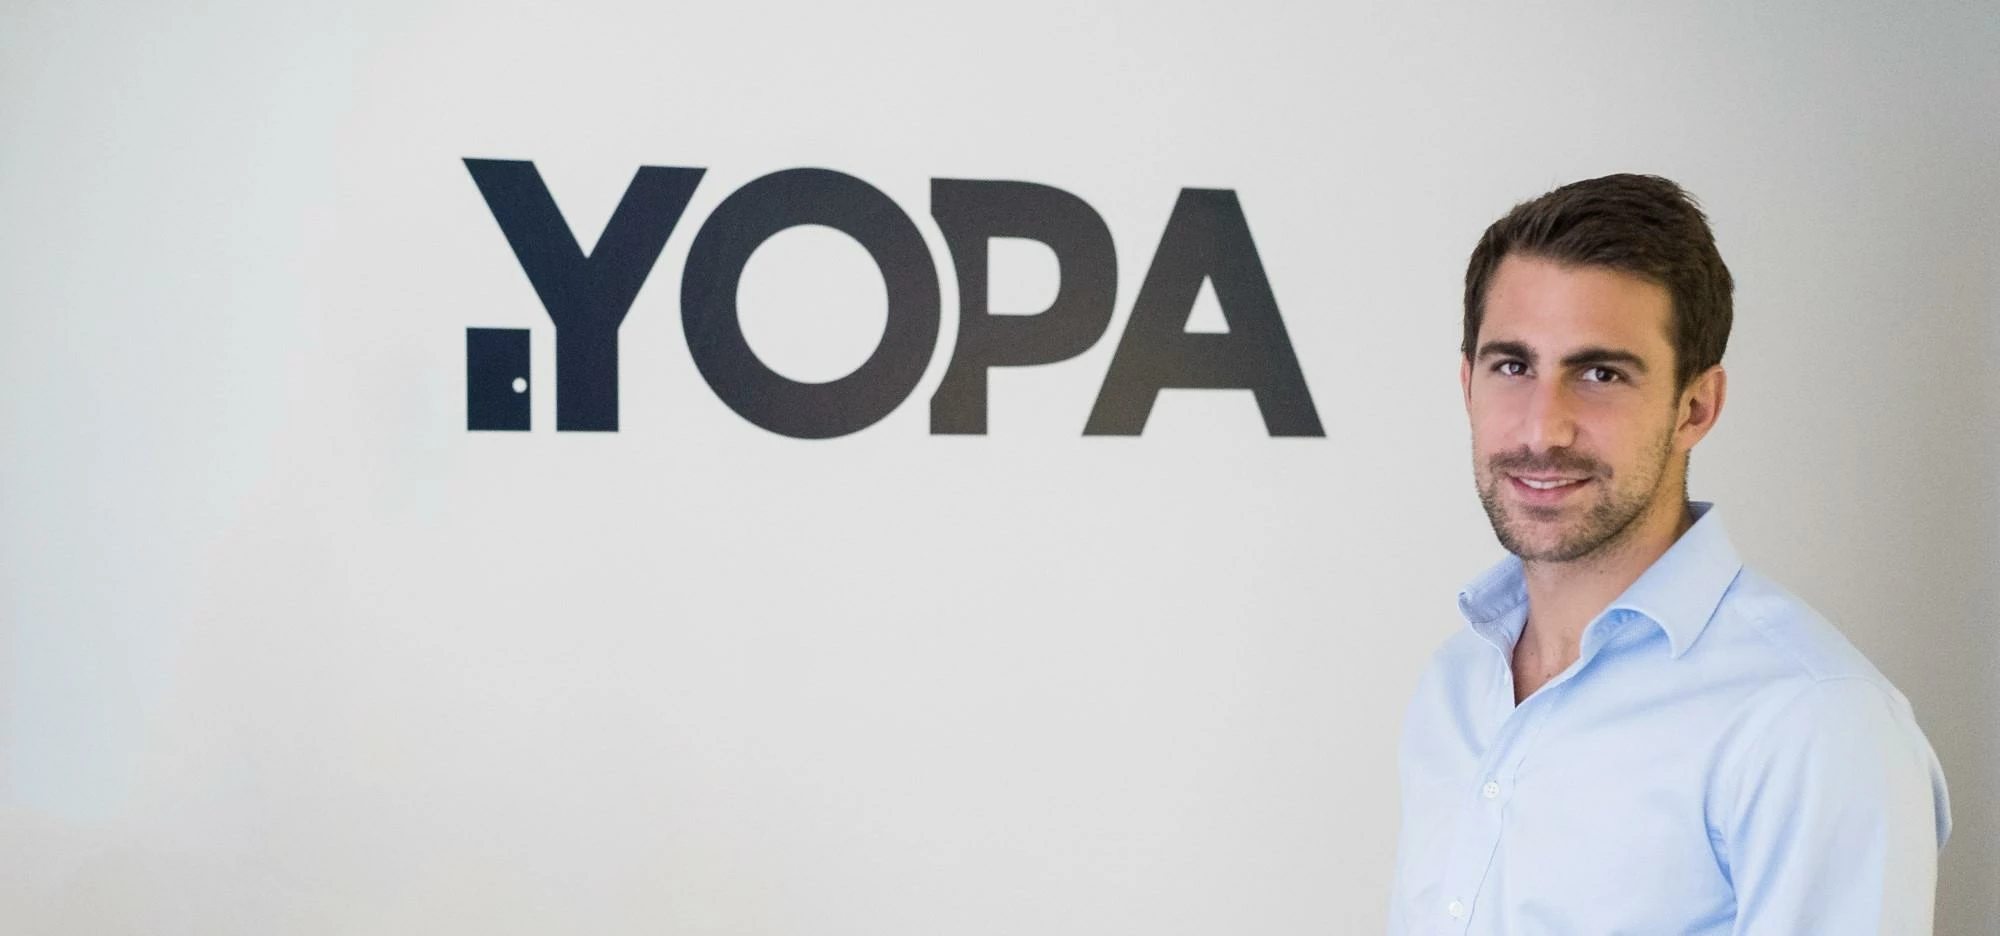 YOPA's CEO Daniel Attia